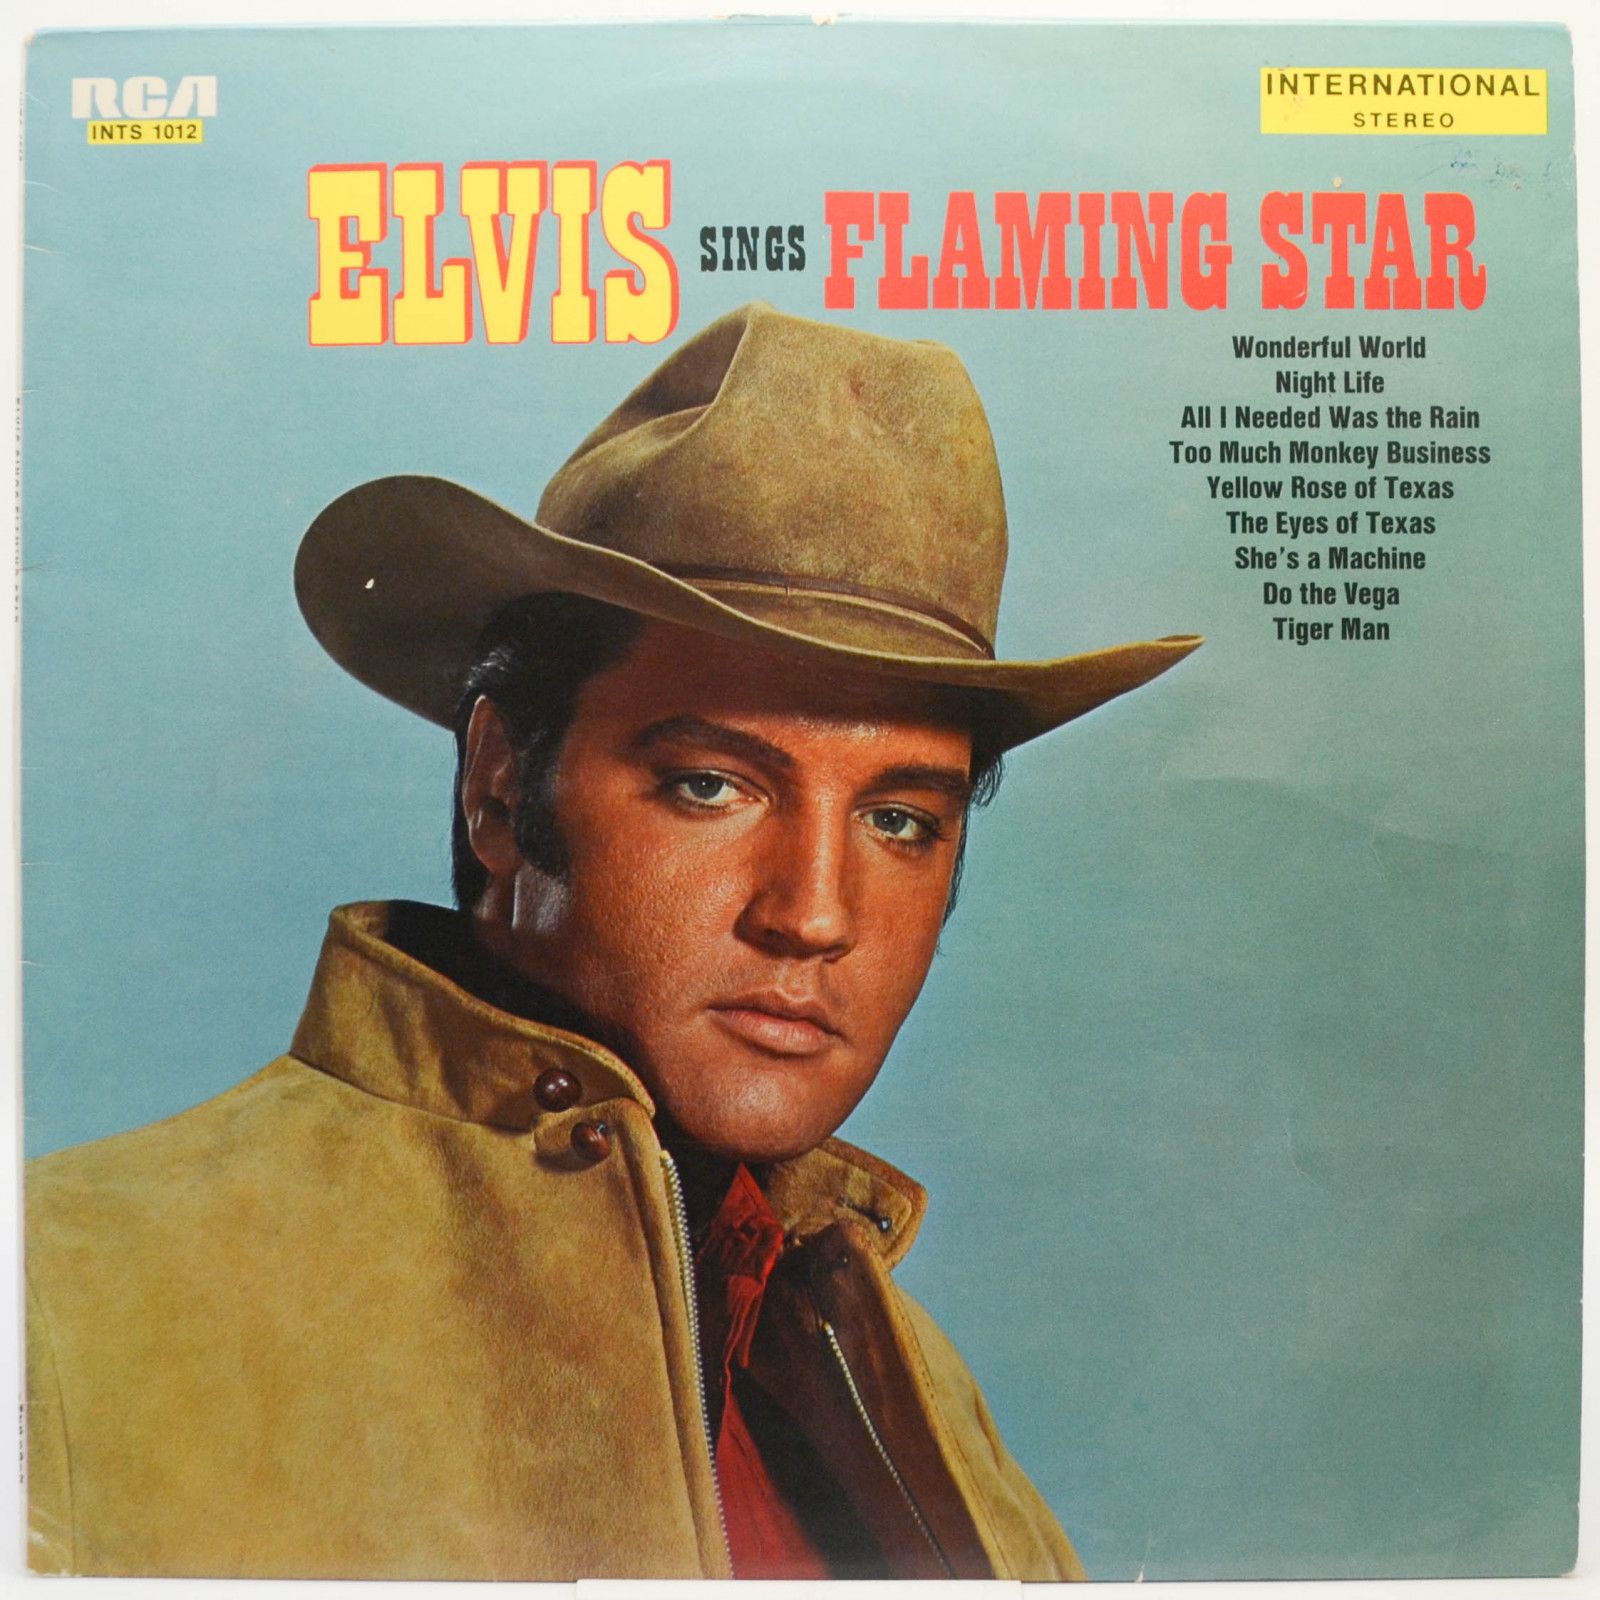 Elvis Presley — Elvis Sings "Flaming Star", 1968